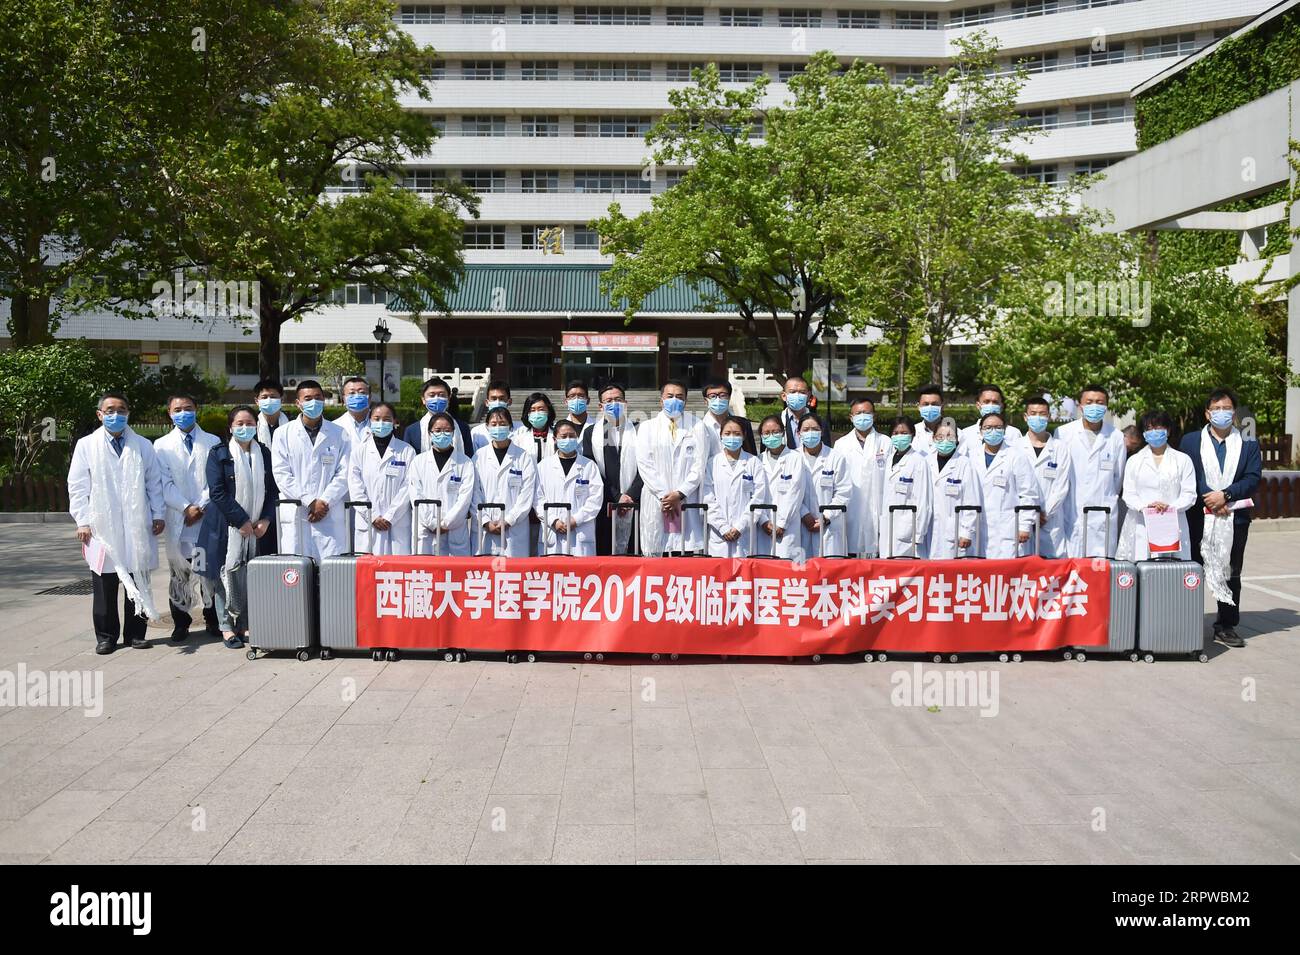 200424 -- PECHINO, 24 aprile 2020 -- gli studenti di medicina della Tibet University posano per una foto di gruppo con i loro tutori e altri membri dello staff all'ospedale Shougang dell'Università di Pechino, capitale della Cina, 24 aprile 2020. Un totale di 17 studenti di medicina della Tibet University ha terminato il loro stage clinico di 48 settimane presso l'ospedale Shougang dell'Università di Pechino venerdì. CHINA-BEIJING-TIBET UNIVERSITY-MEDICAL STUDENT-STAGE-COMPLETION CN PENGXZIYANG PUBLICATIONXNOTXINXCHN Foto Stock